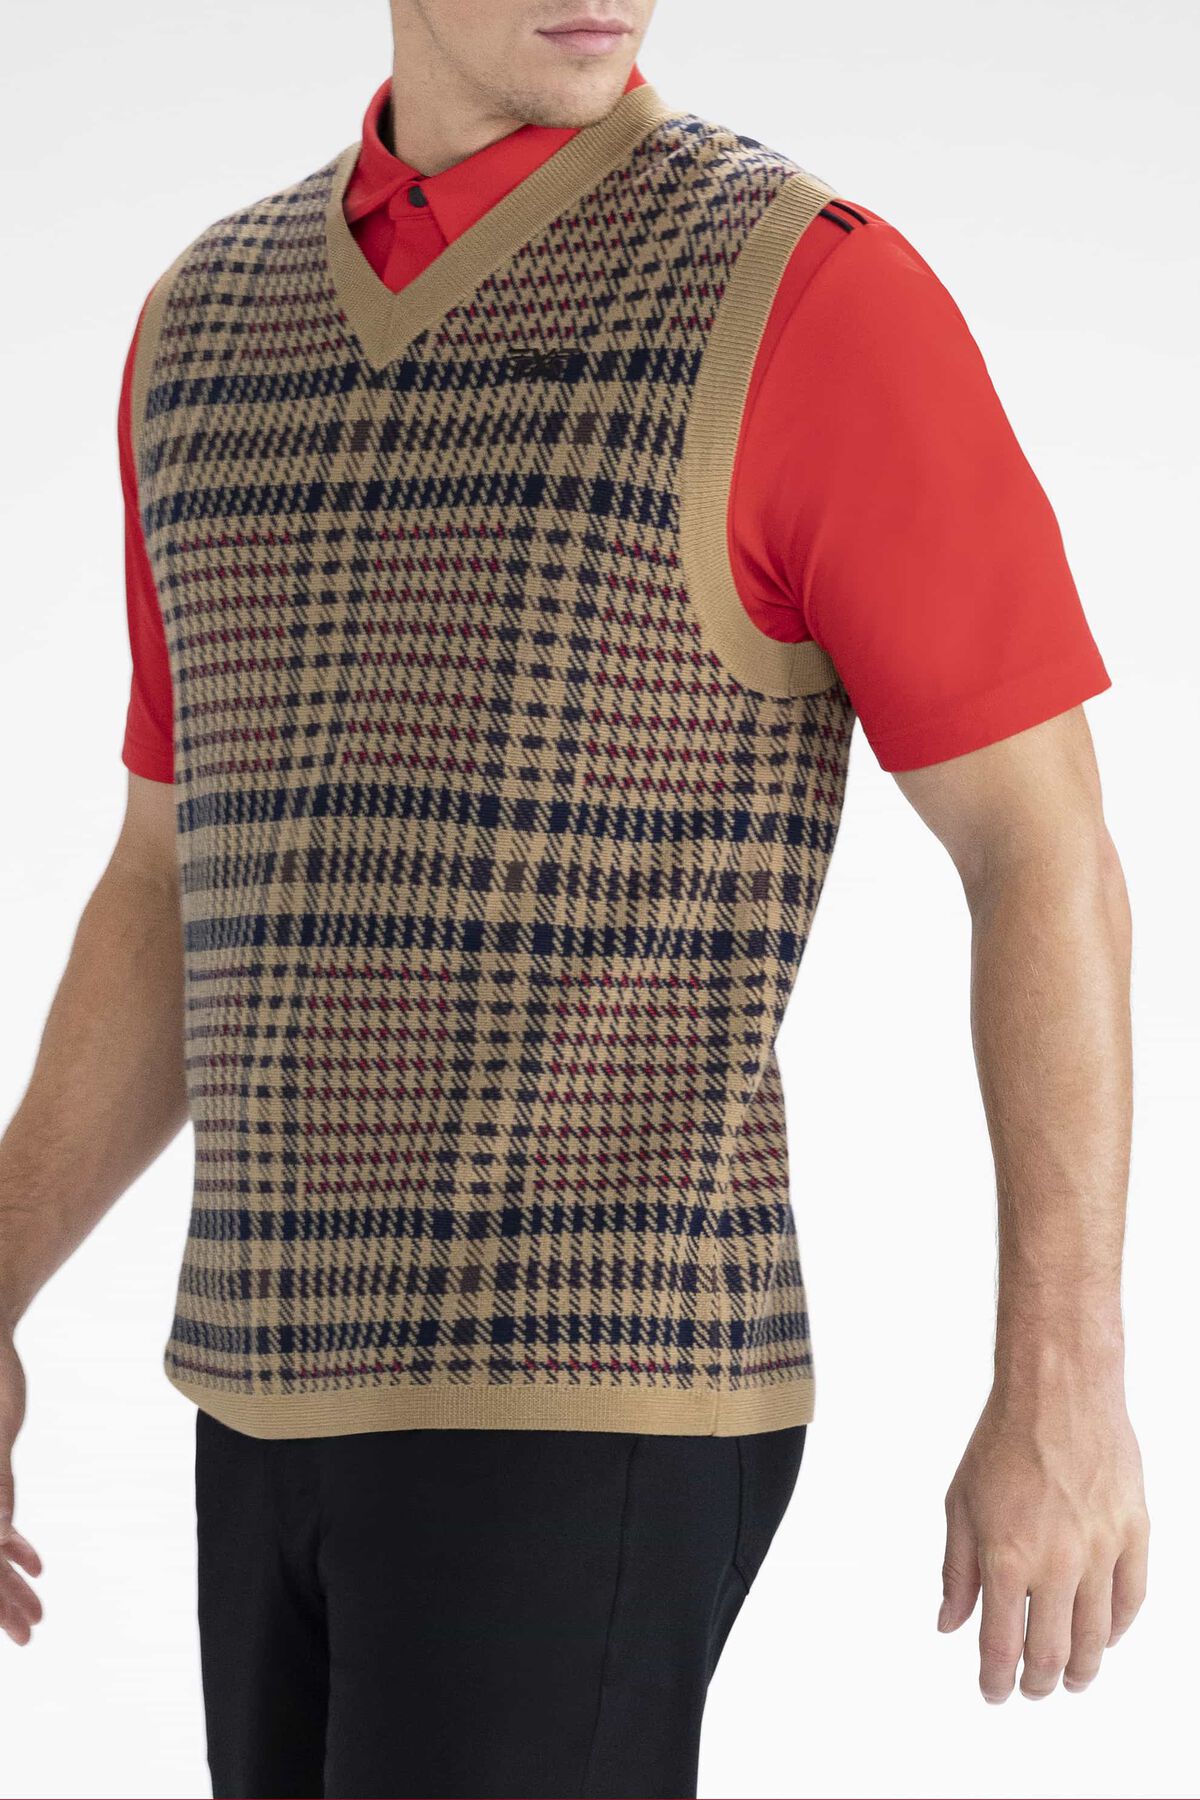 鍔 Een goede vriend Wordt erger Plaid Sweater Vest | Shop the Highest Quality Golf Apparel, Gear,  Accessories and Golf Clubs at PXG